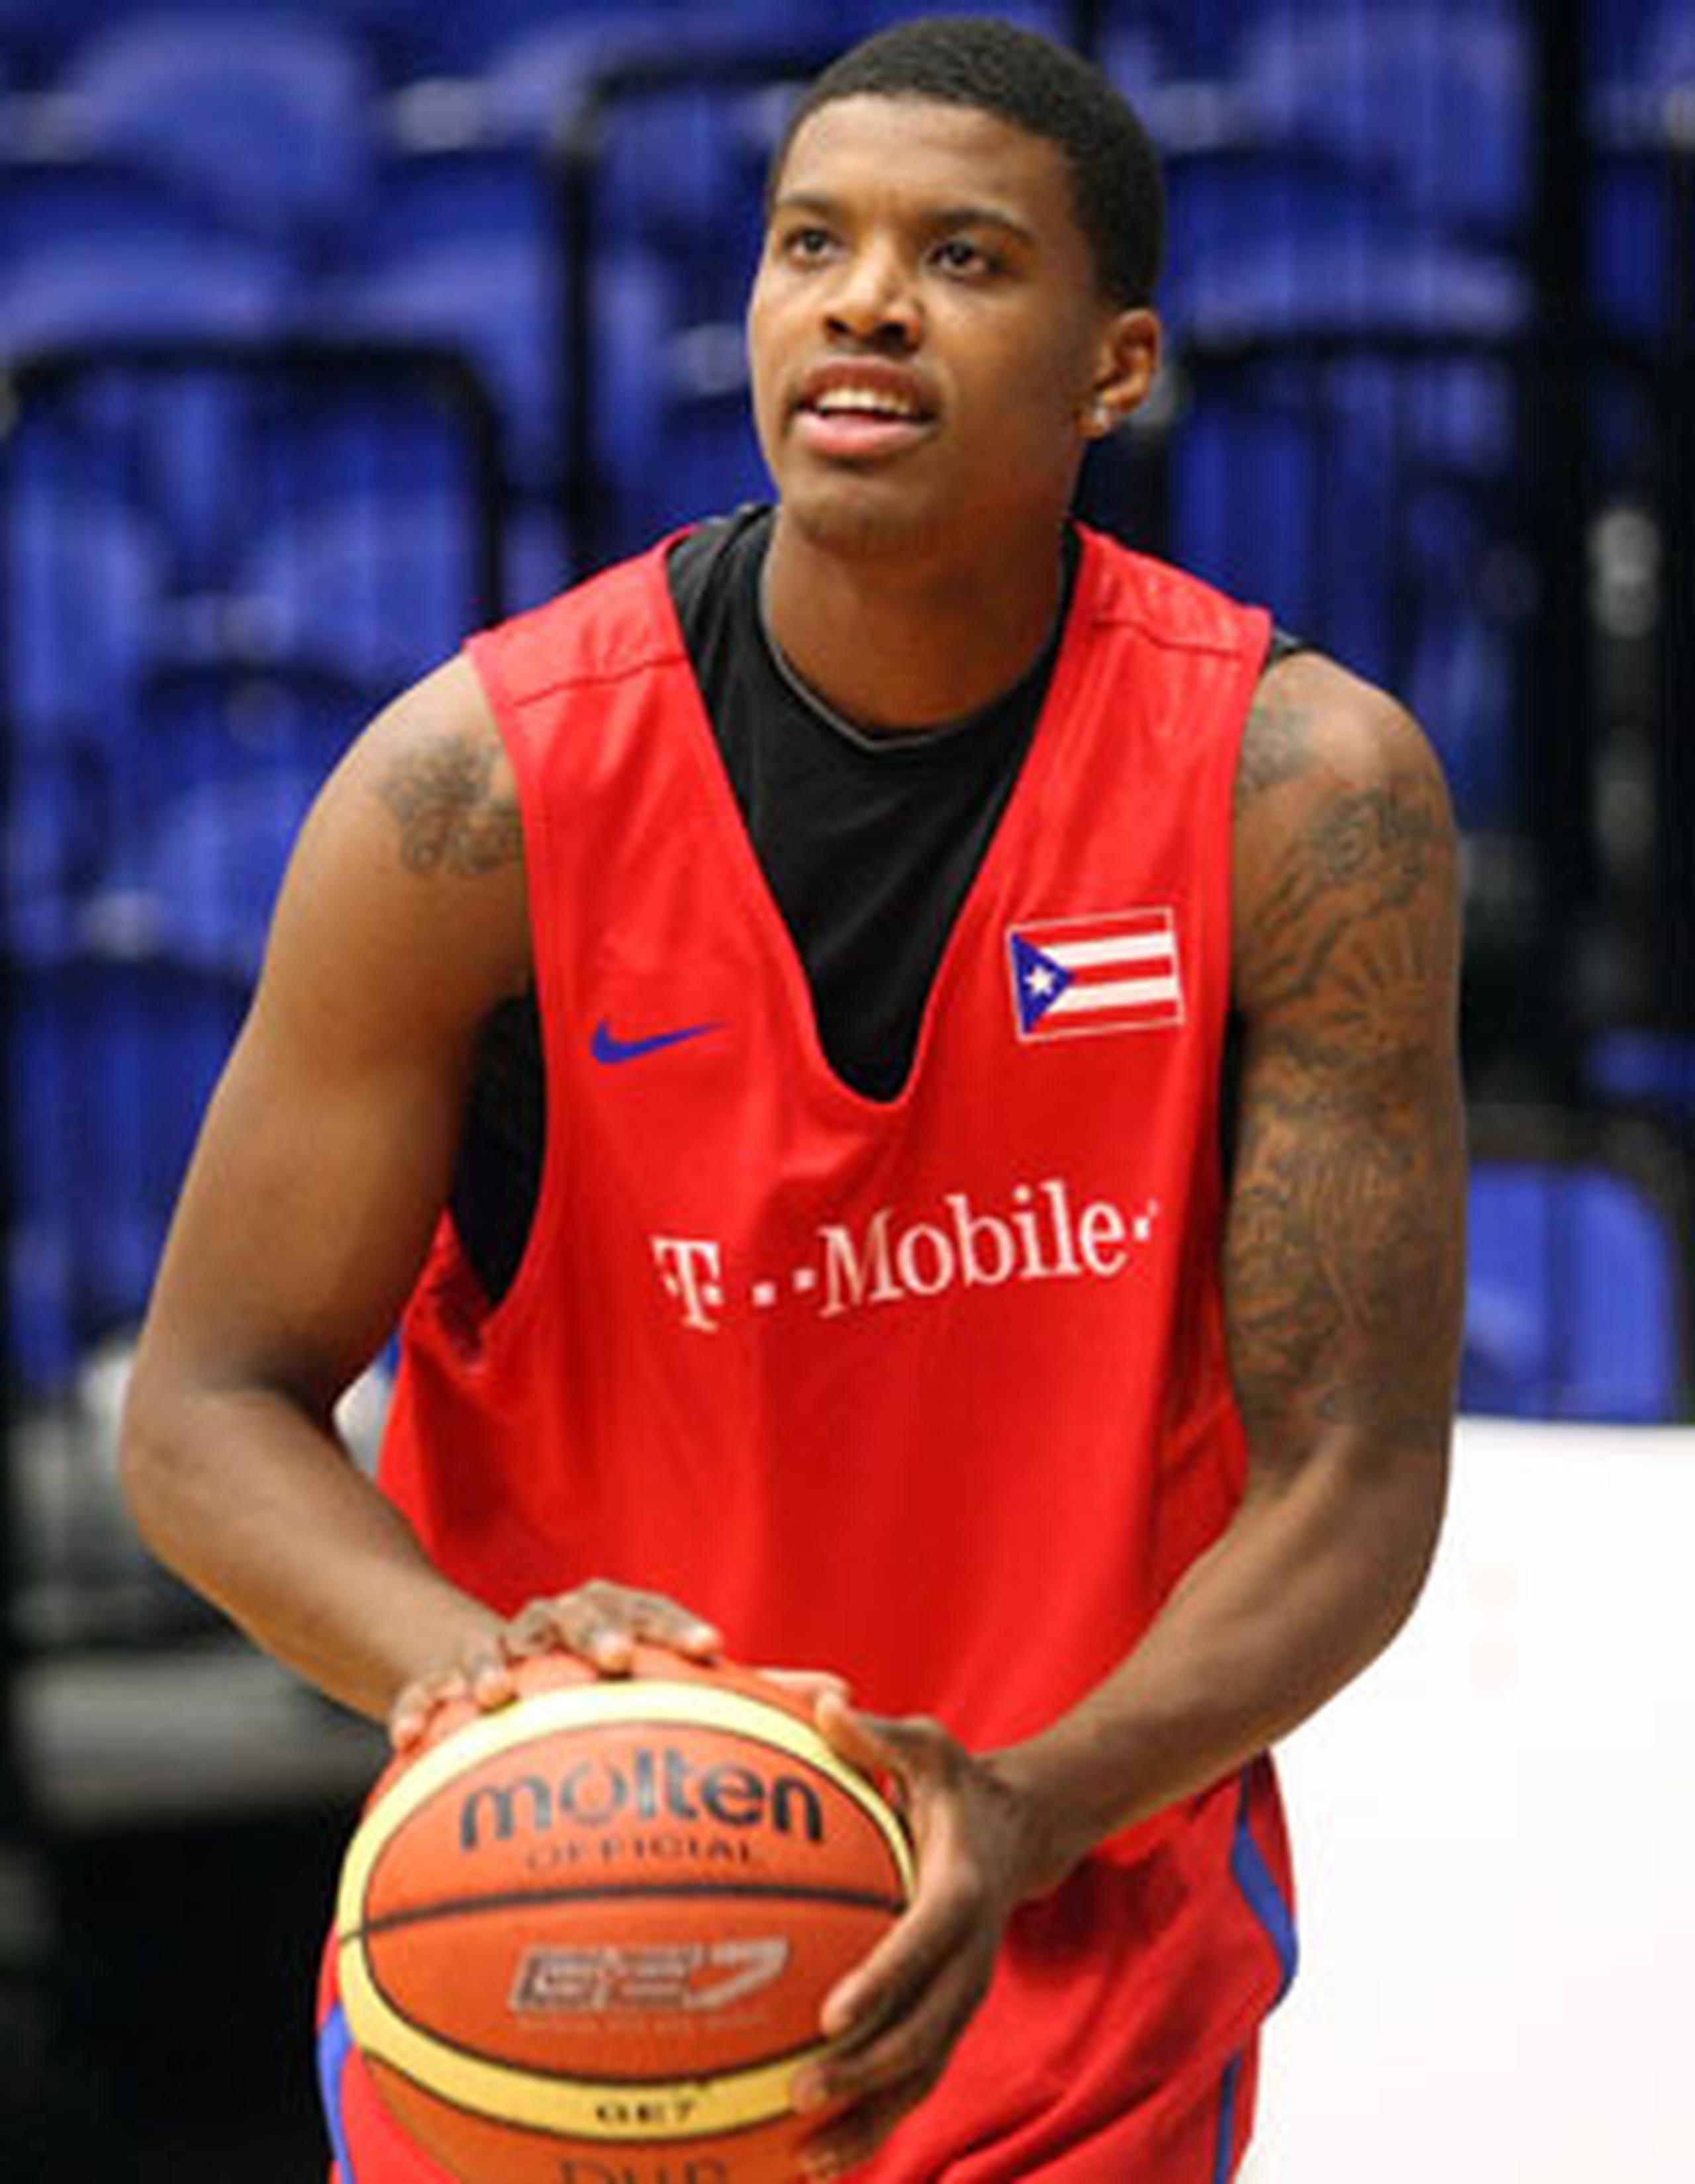 En el 2011, Ledo participó de unas prácticas con la Selección Nacional adulta de baloncesto. (Archivo)